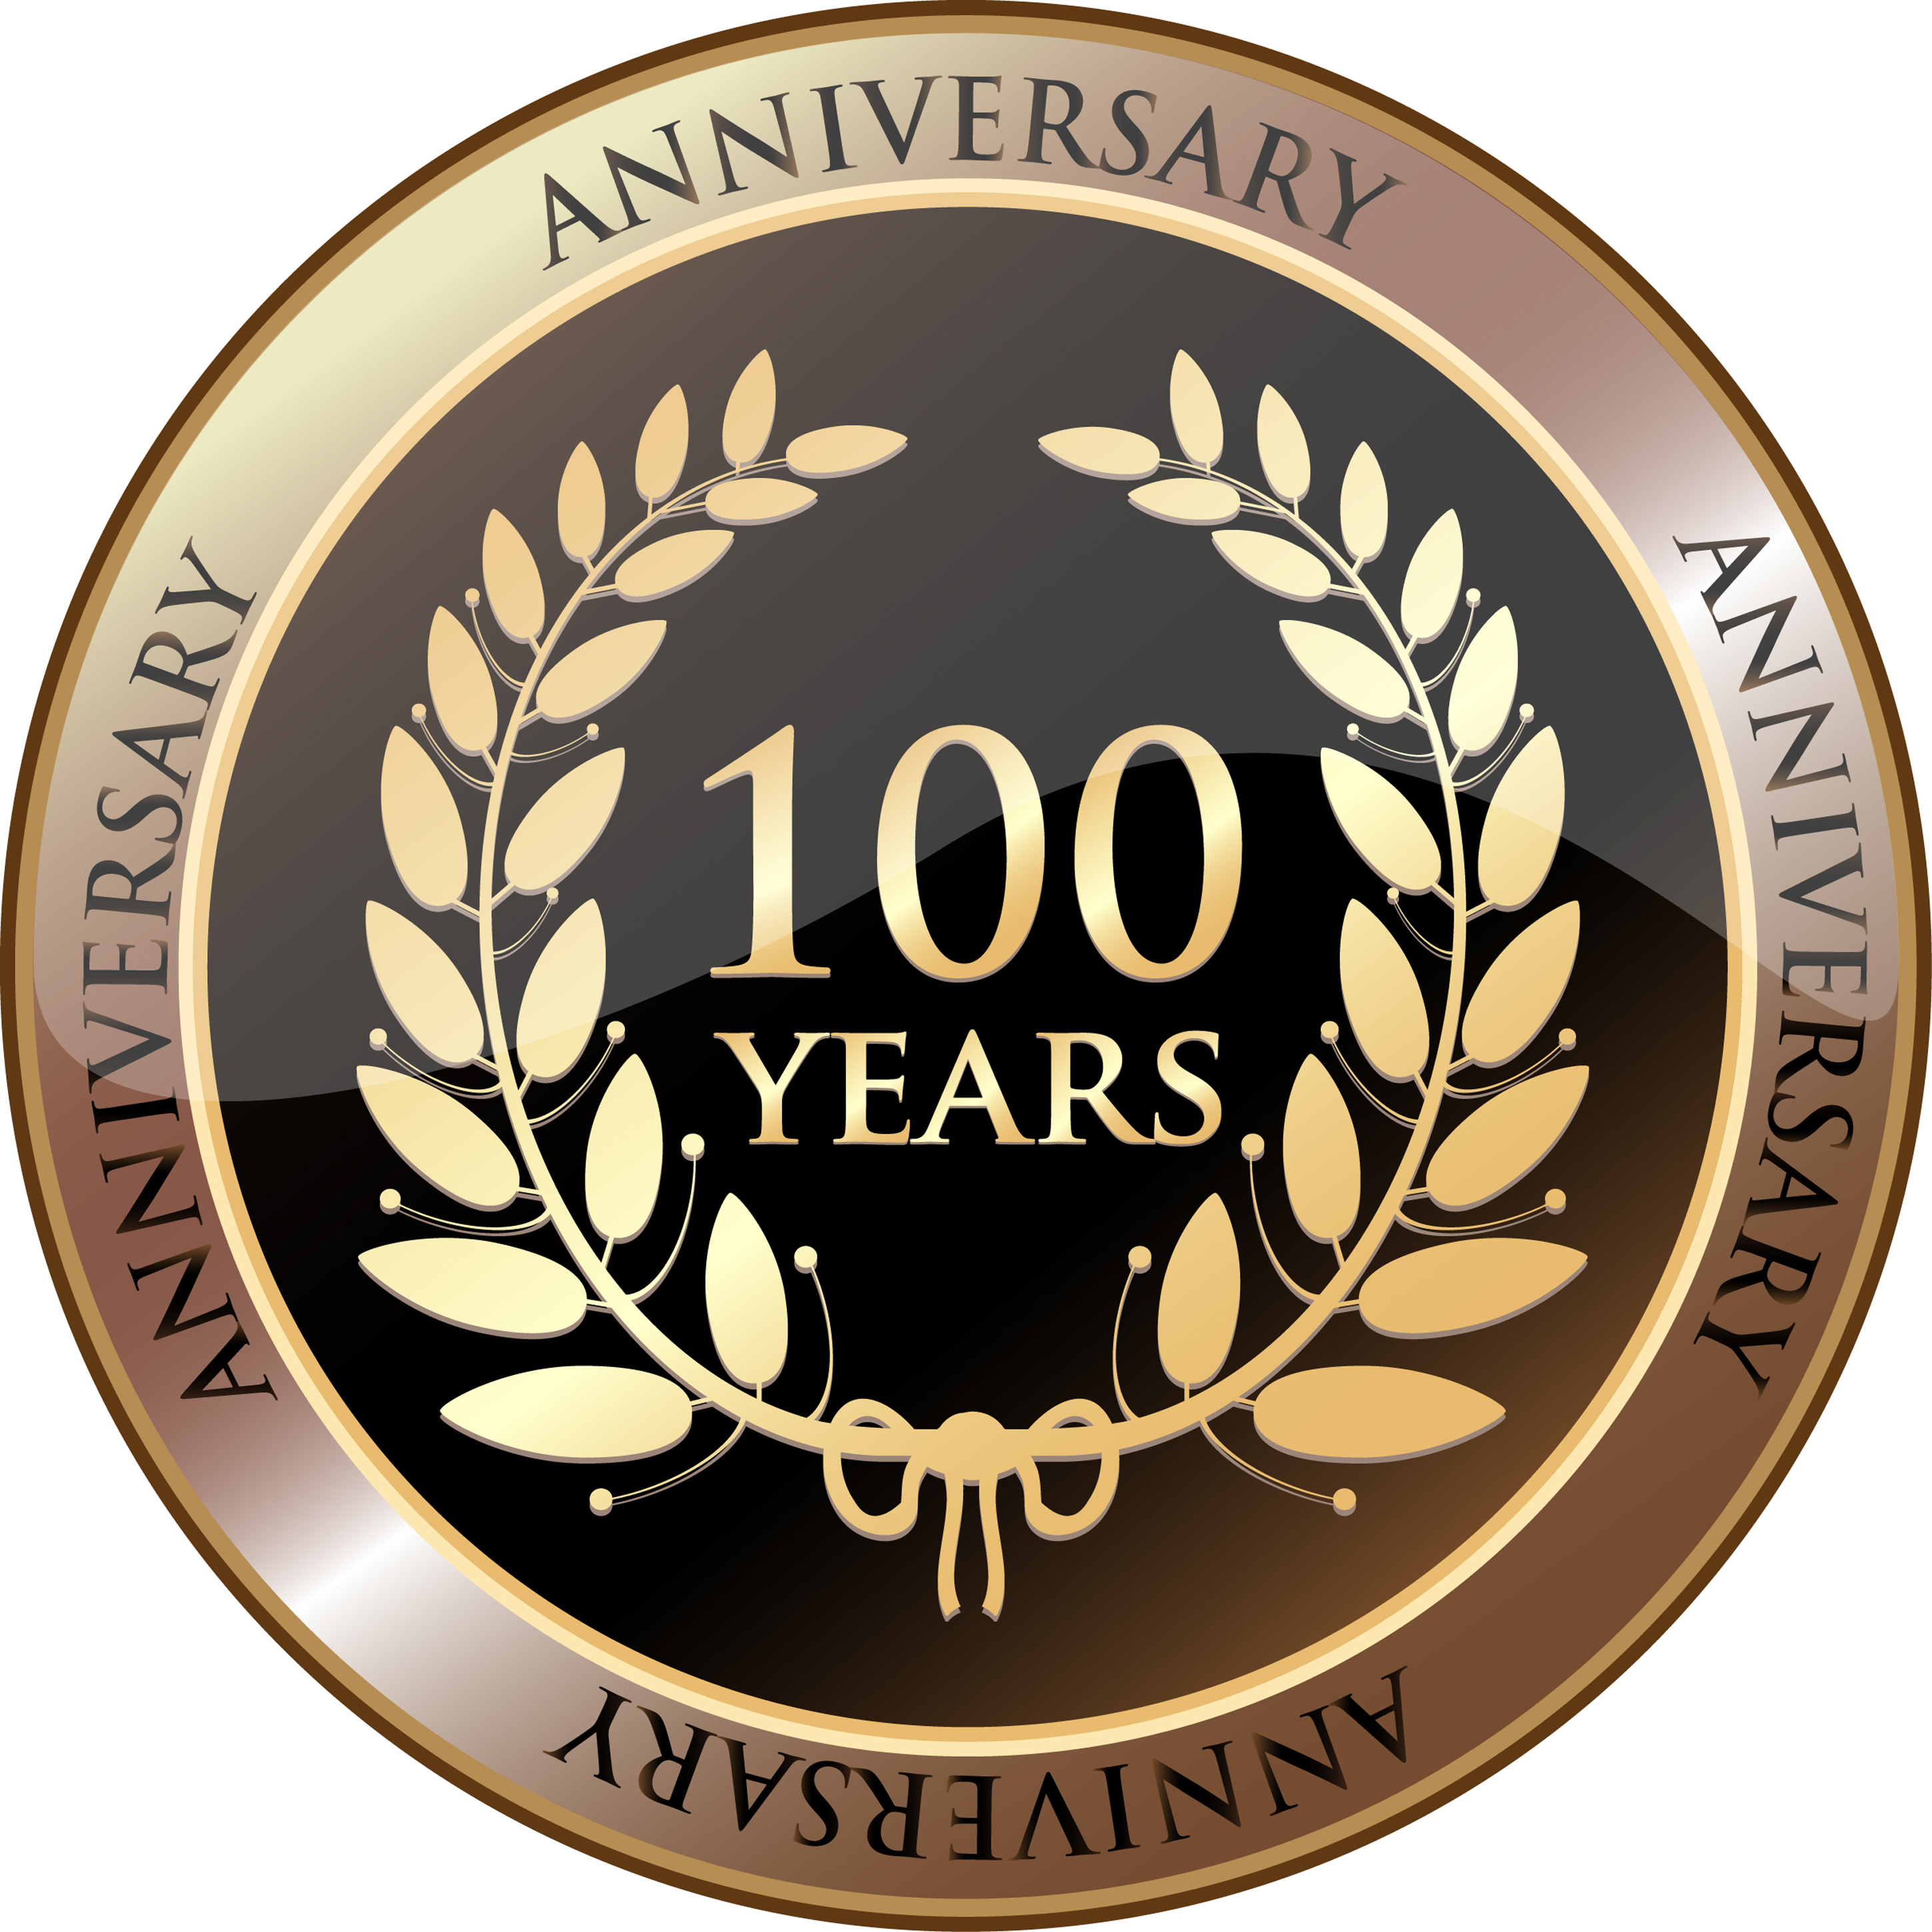 100 years celebrations logo